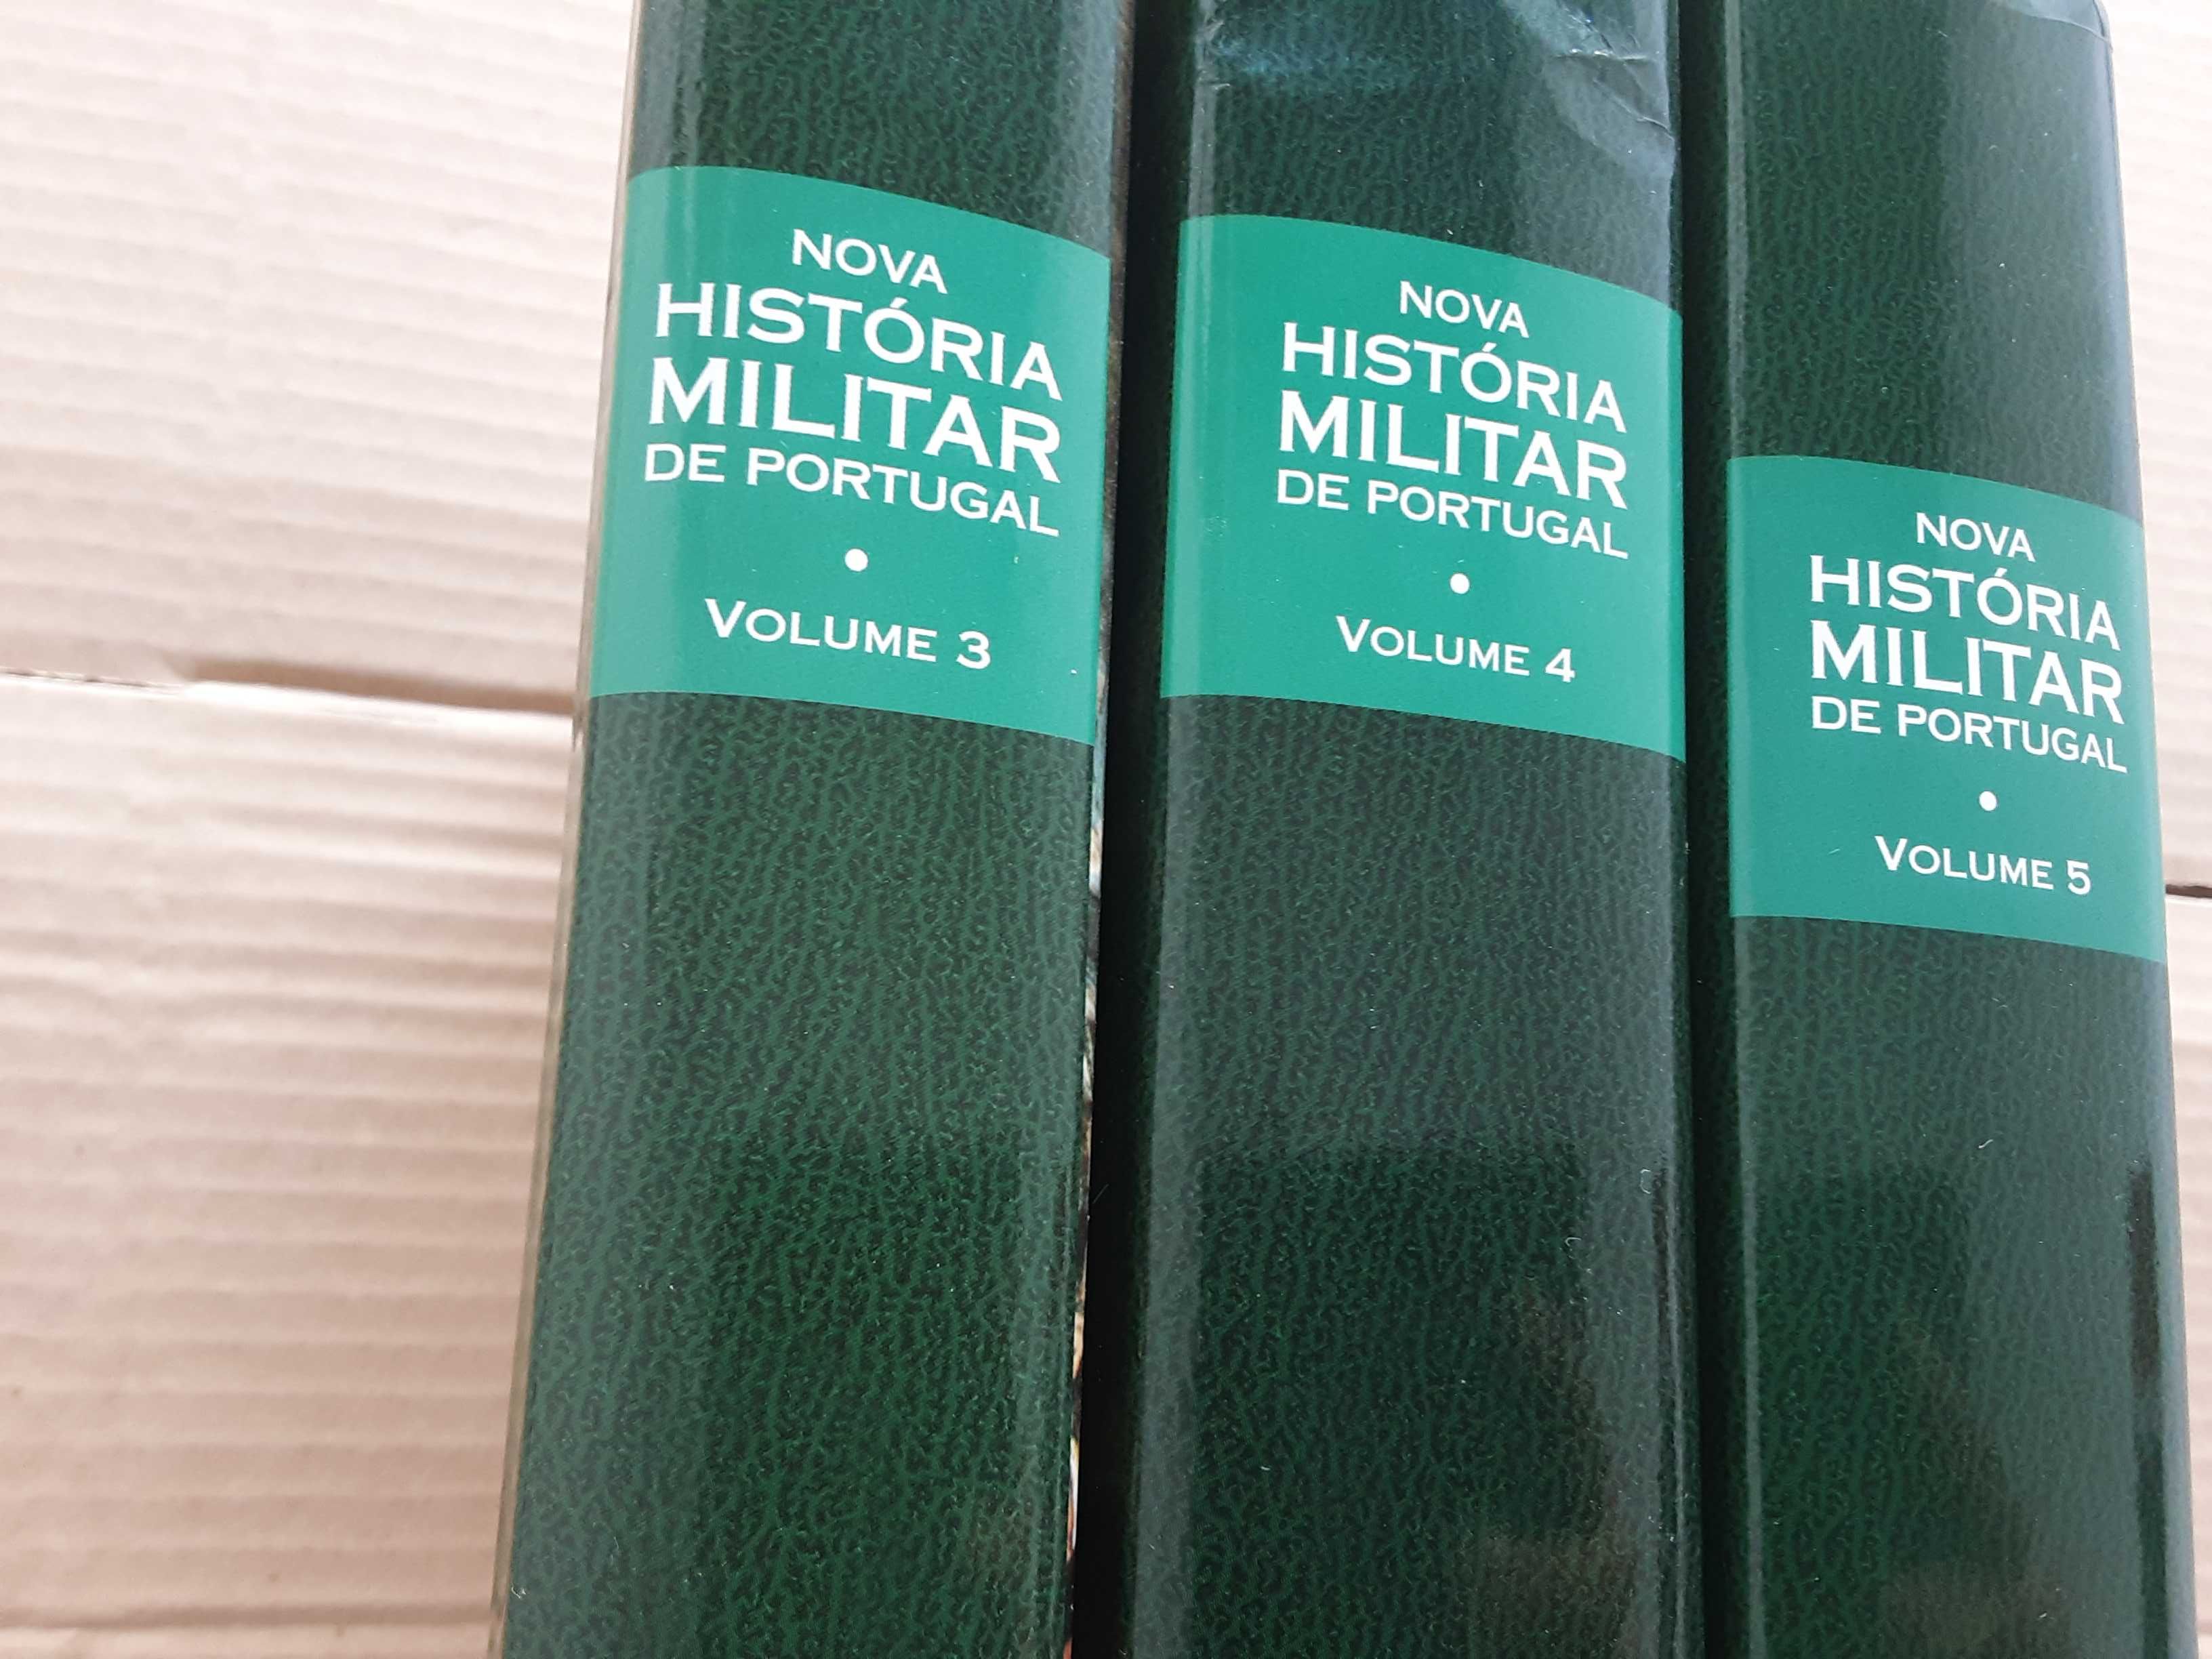 Livros "História Militar de Portugal" volume 3, 4 e 5